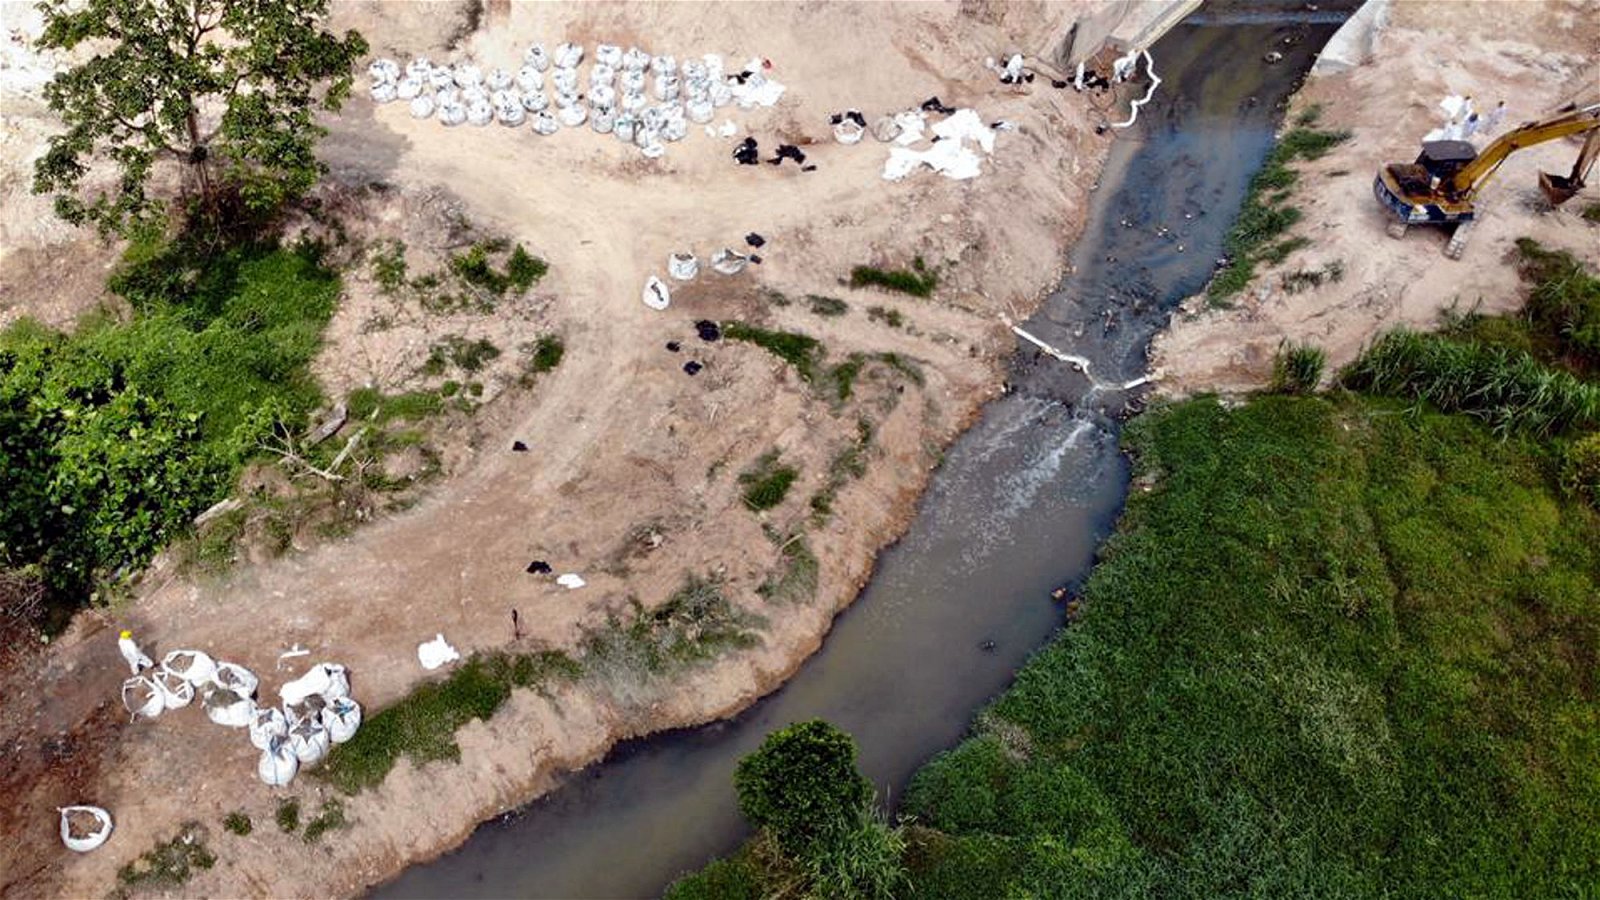 今年3月份，巴西古当因金金河污染事件一夜之间成为全国人民关注的焦点，金金河也在短时间内获政府投入大笔资金和人力，已求在最短时间内有效清理河流内化学废料。图中河流是化学污染事件爆发时的情况，从高空俯视，可见河面变黑。河岸边的白色袋子内所装置的则是工作人员从河内打捞出来的化学废料。